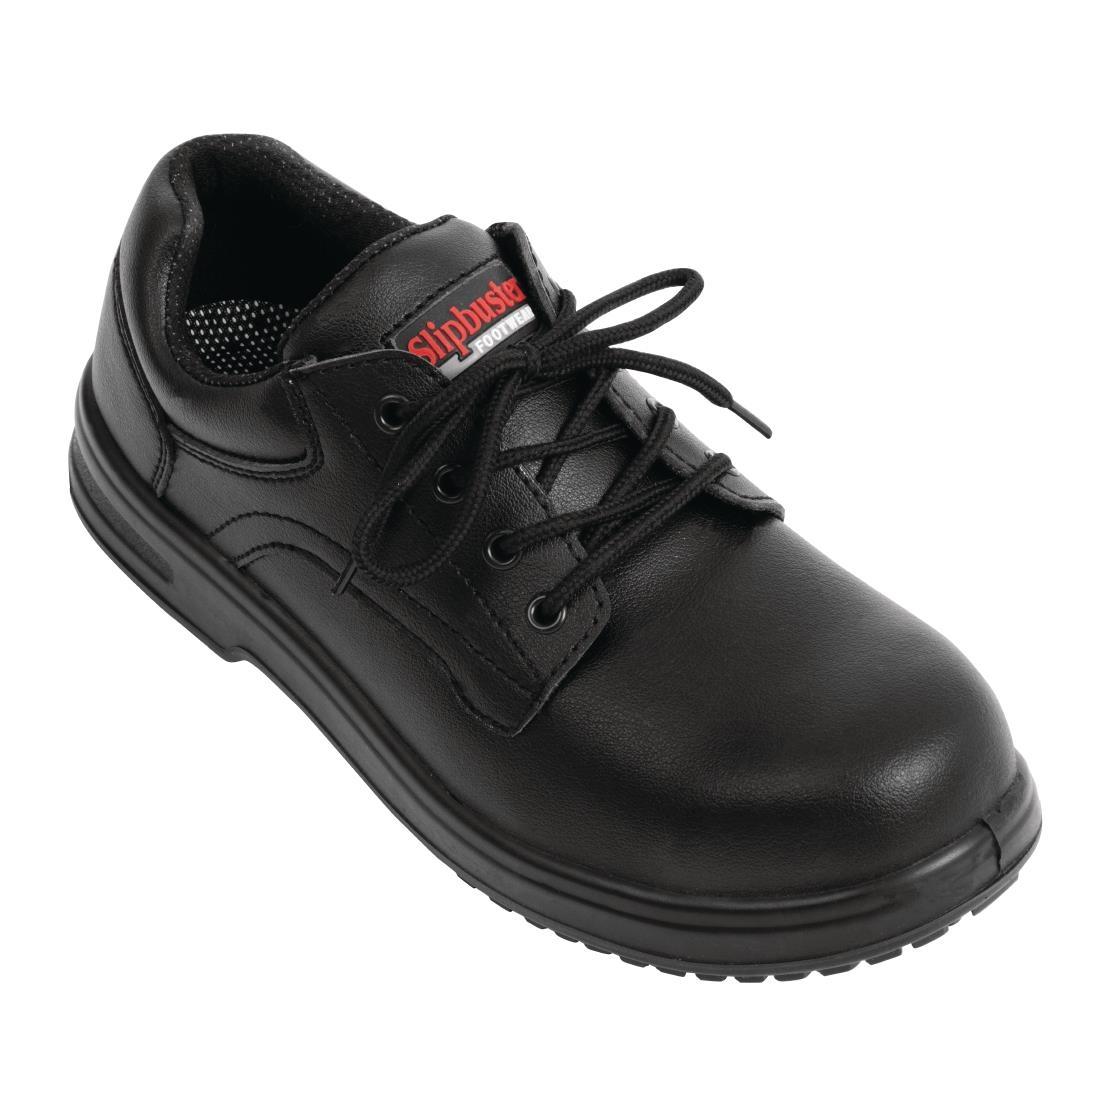 Slipbuster Basic Shoes Slip Resistant Black 39 - BB498-39  - 1